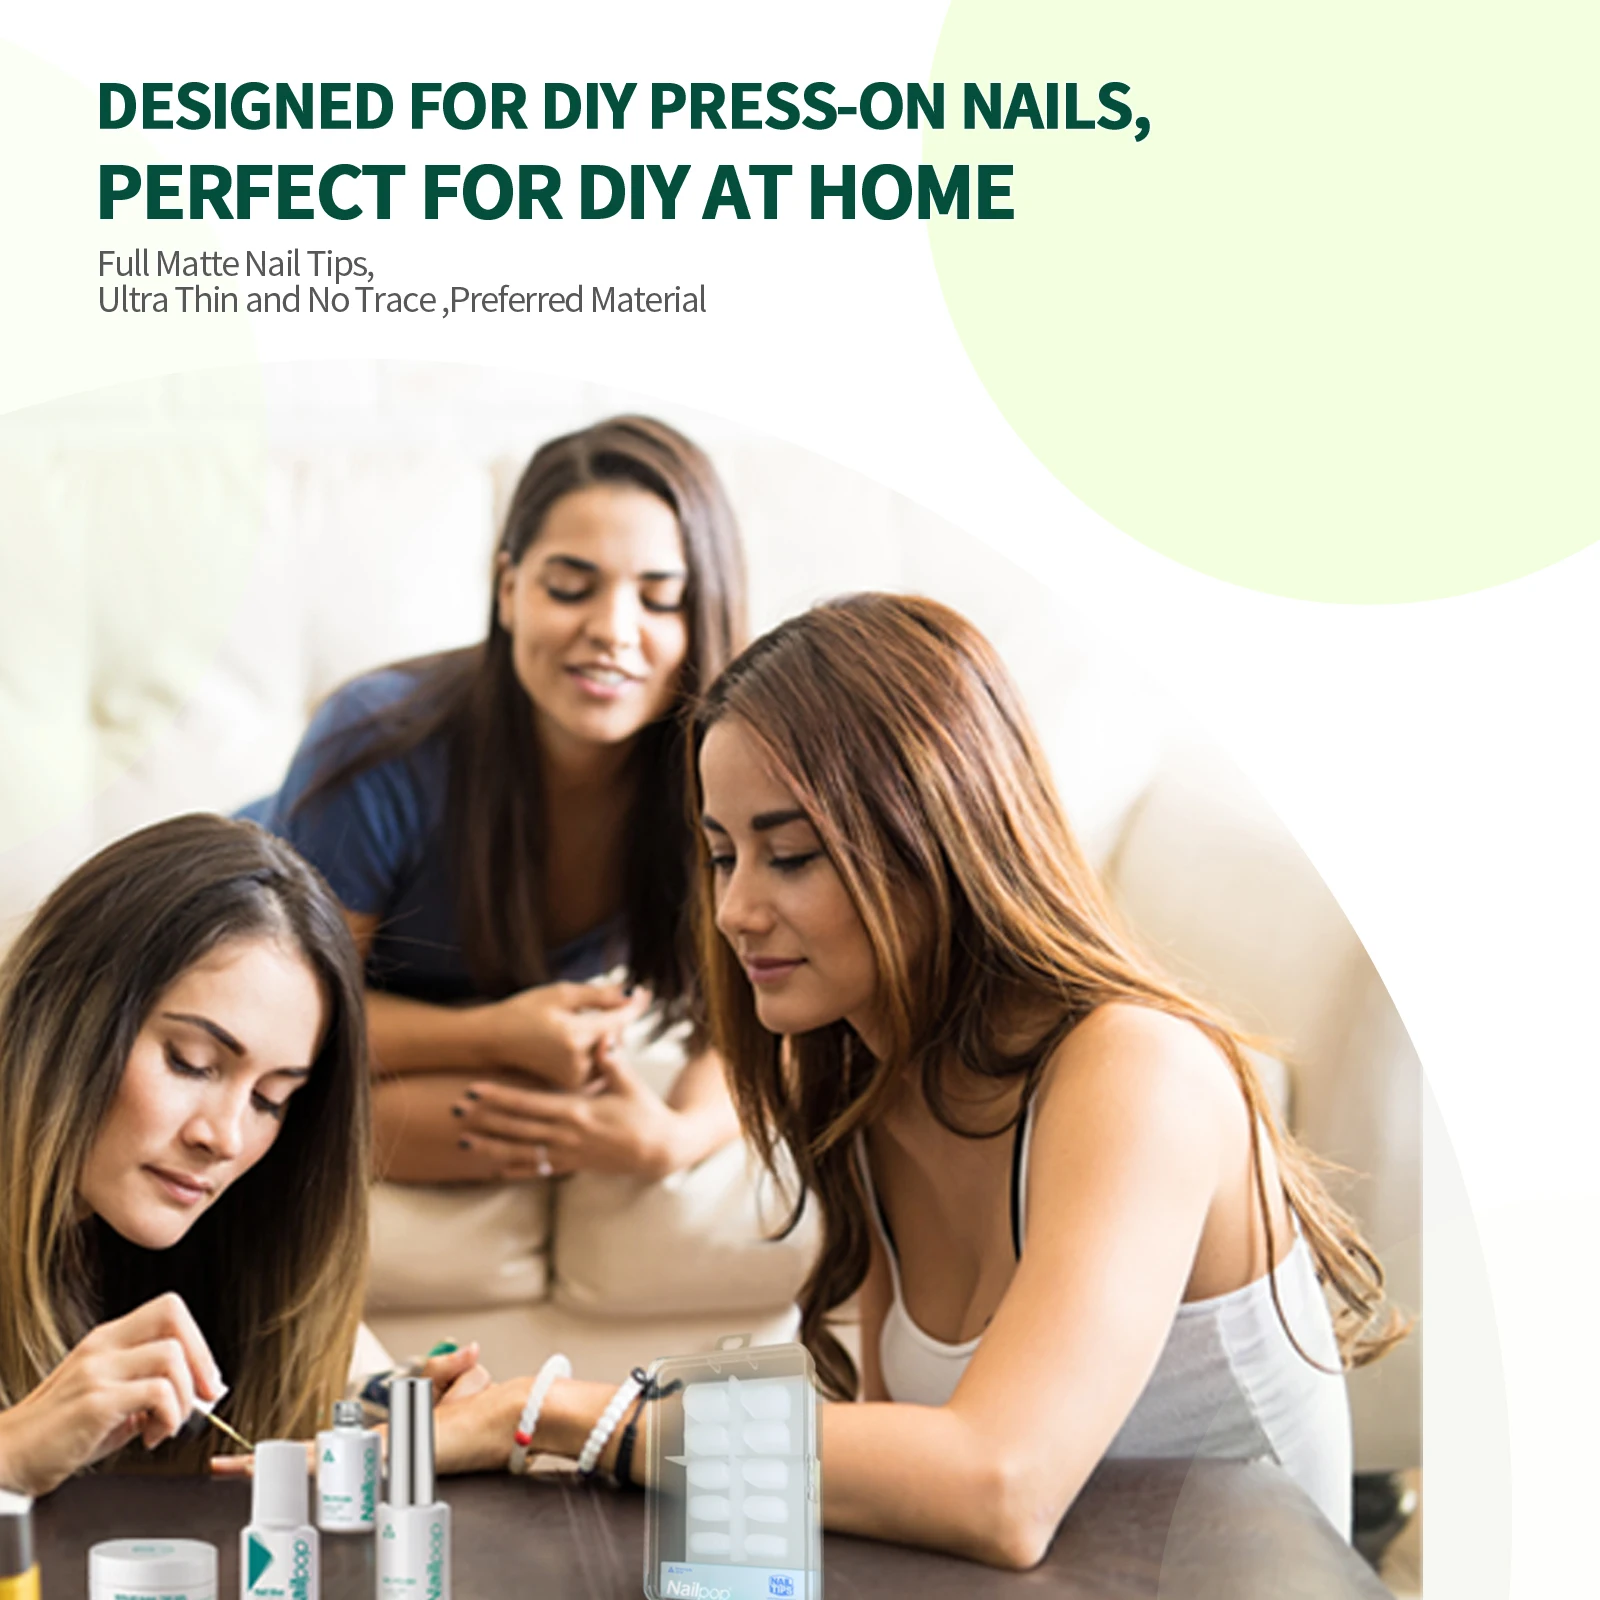 Buy Nail Tips Natural Fake Nails - ECBASKET Acrylic Half Cover French Nail  Tips 500pcs with Box False Nail Tips for Nail Salons and DIY Nail Art at  Home 10 Sizes Online